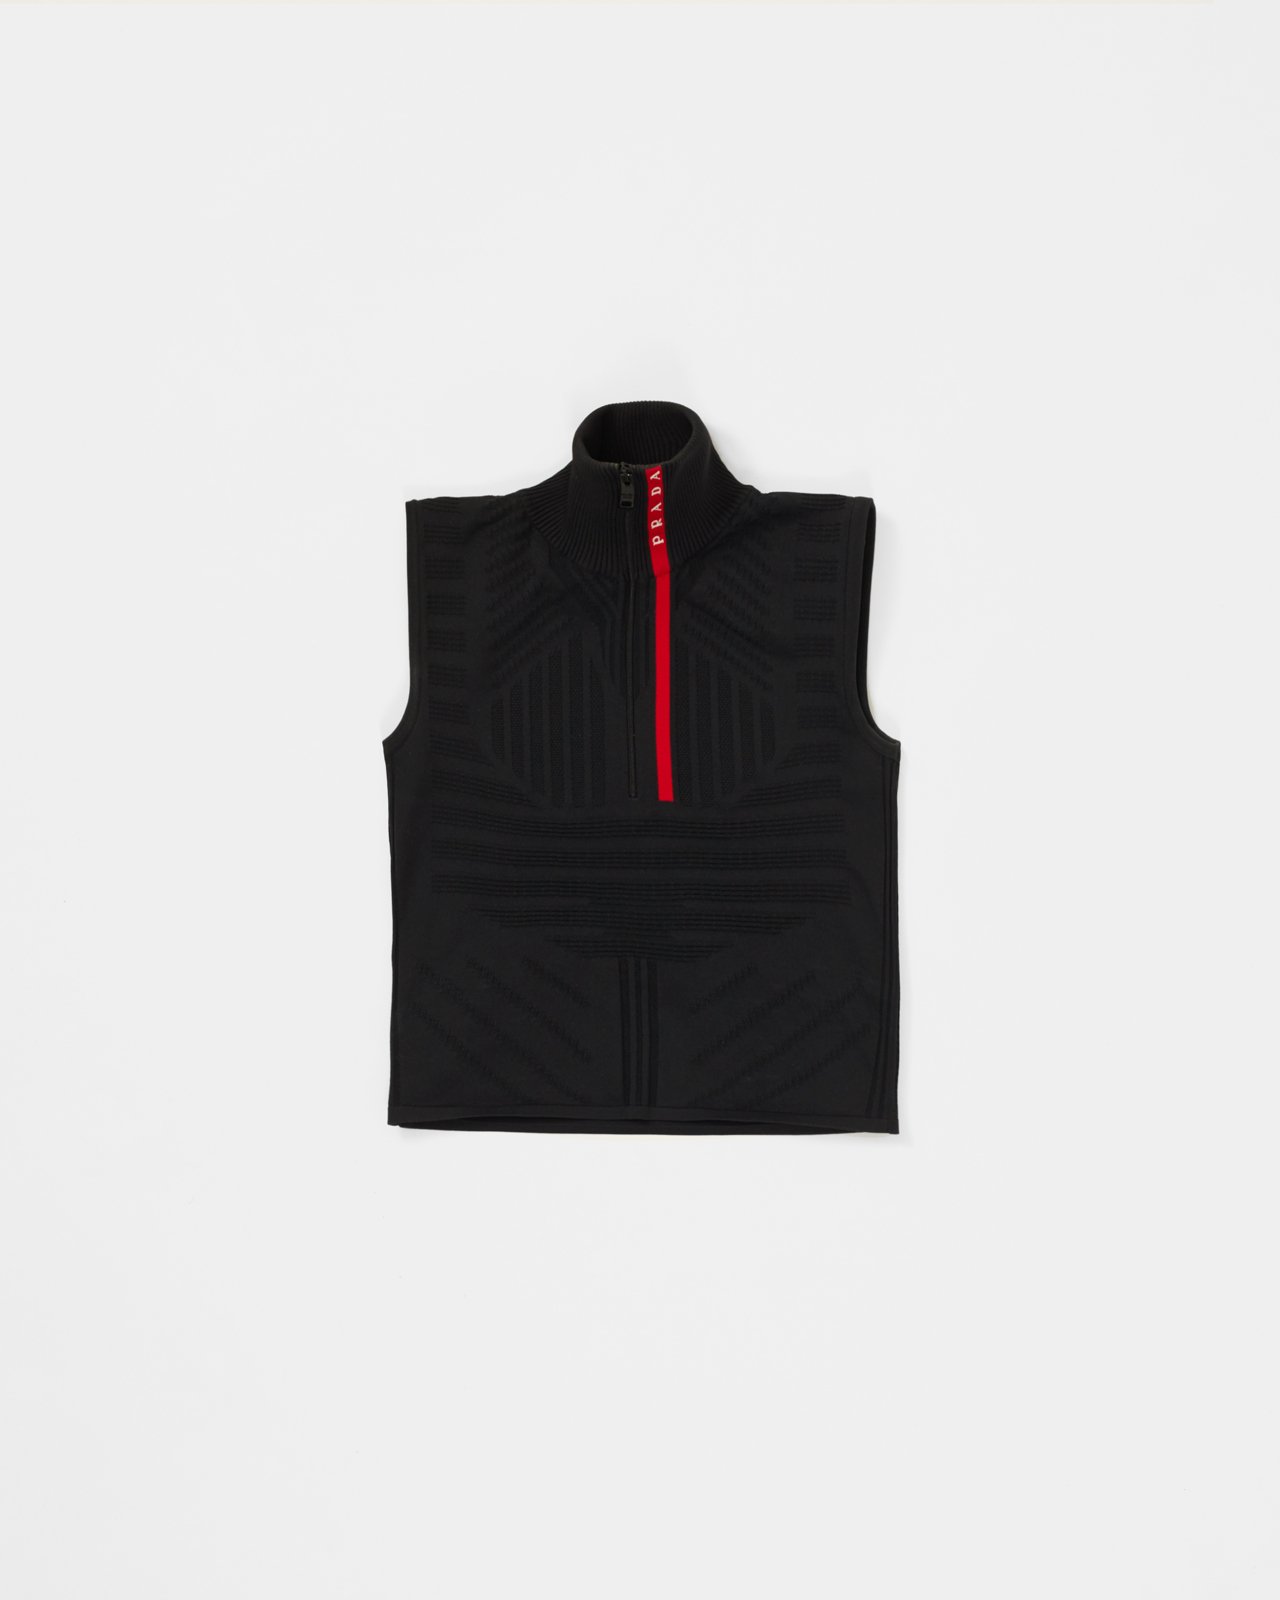 Prada - Knitted Nylon Crop Top - Clothing - Black - Image 4